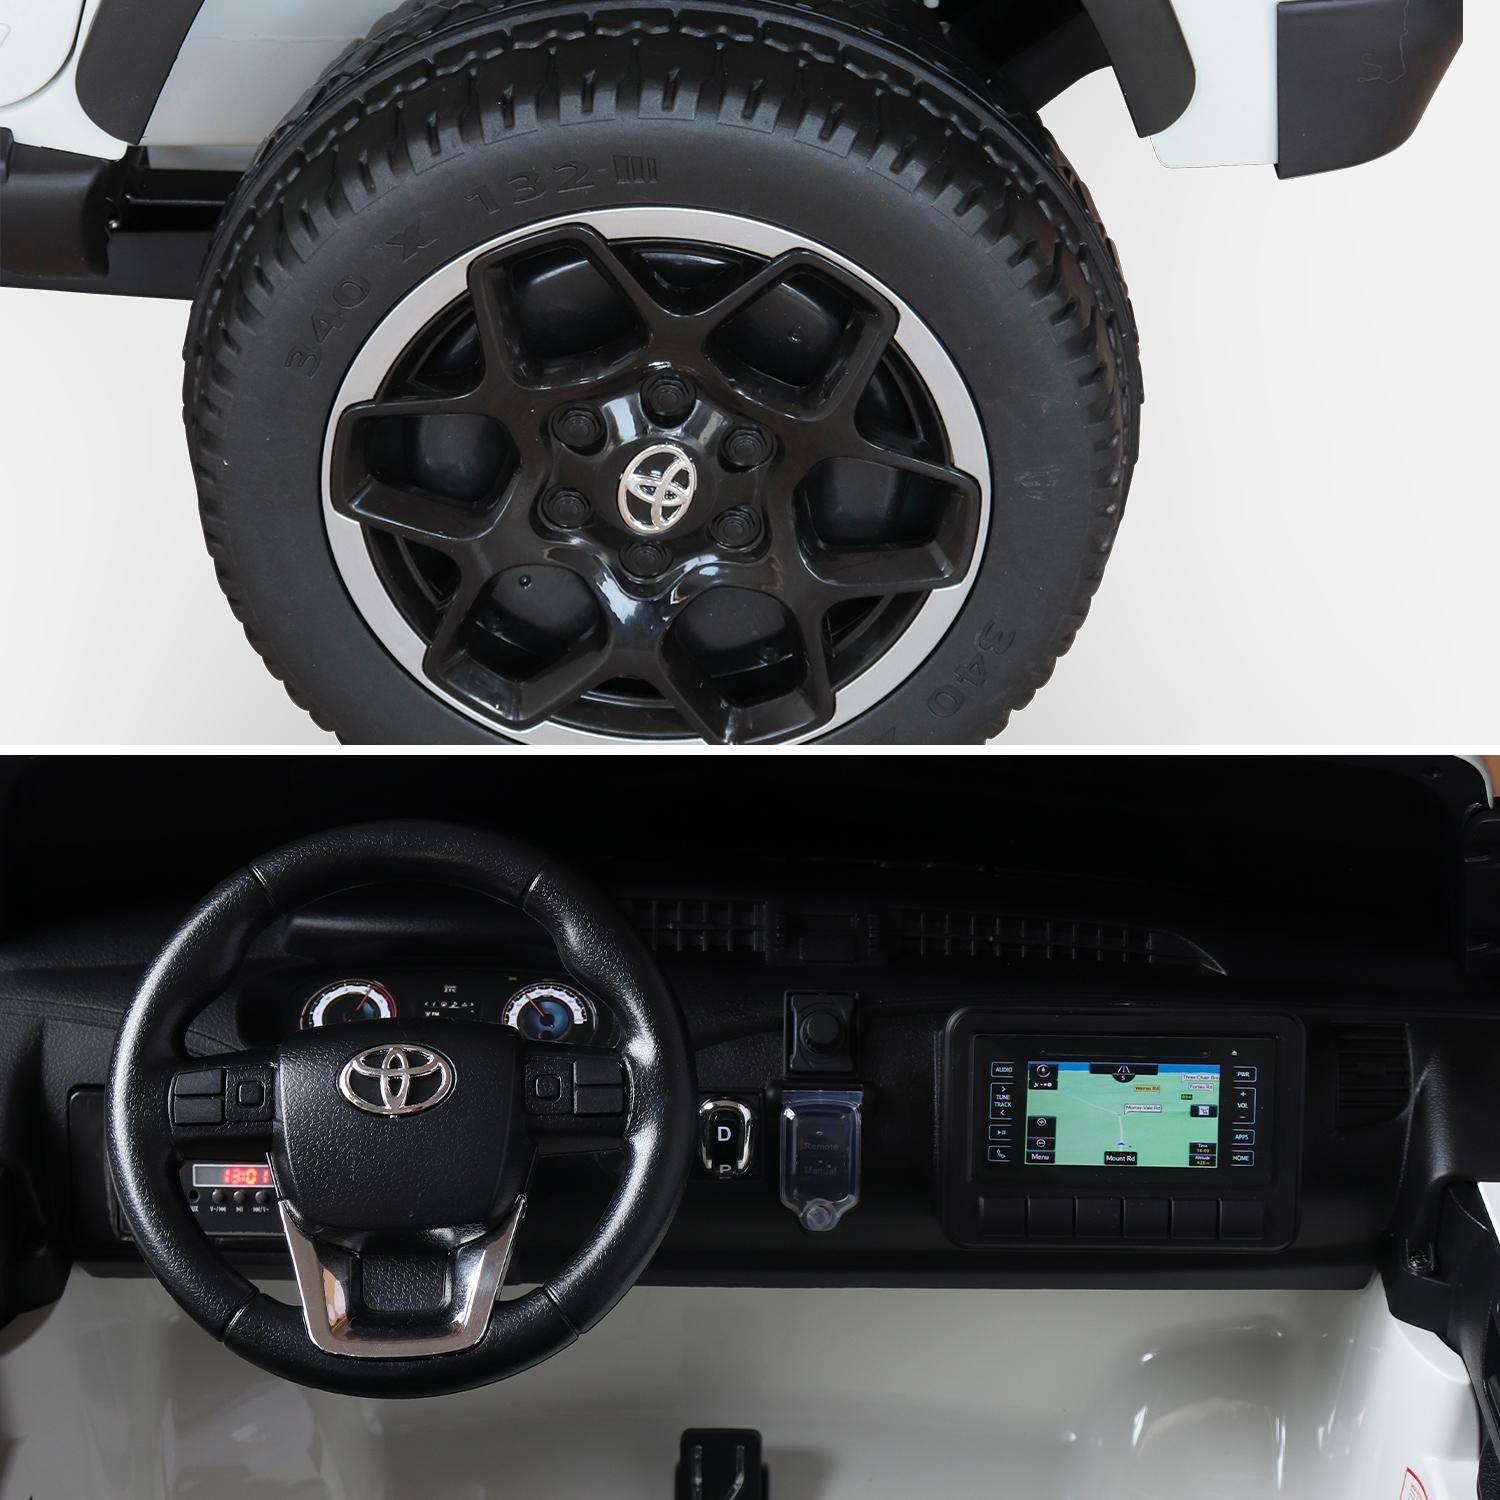 TOYOTA Hilux 2 roues motrices blanc, voiture électrique 12V, 2 places, pour enfants avec autoradio, télécommande, MP3, port USB / carte SD, prise jack et phares fonctionnels Photo6